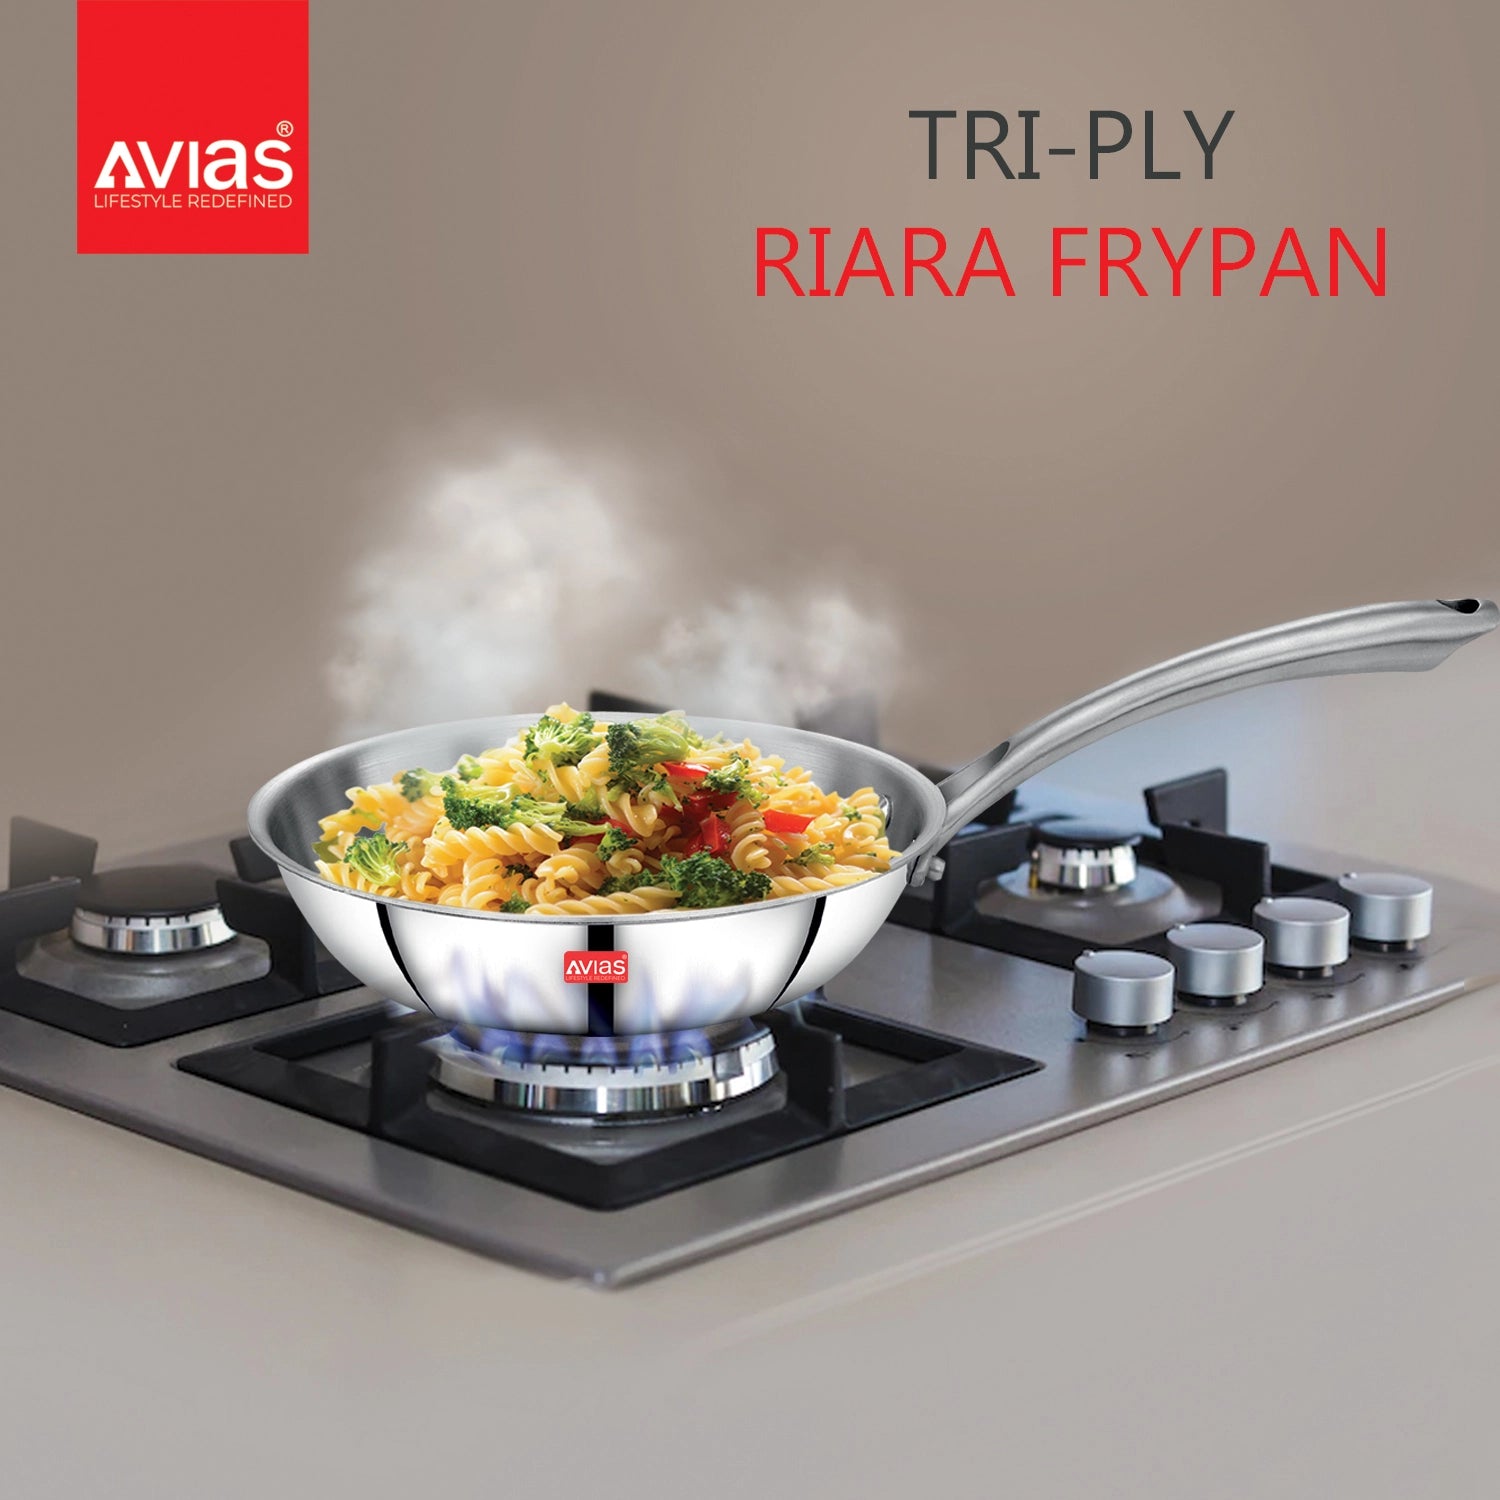 AVIAS Riara premium stainless steel Triply Fry pan on stove